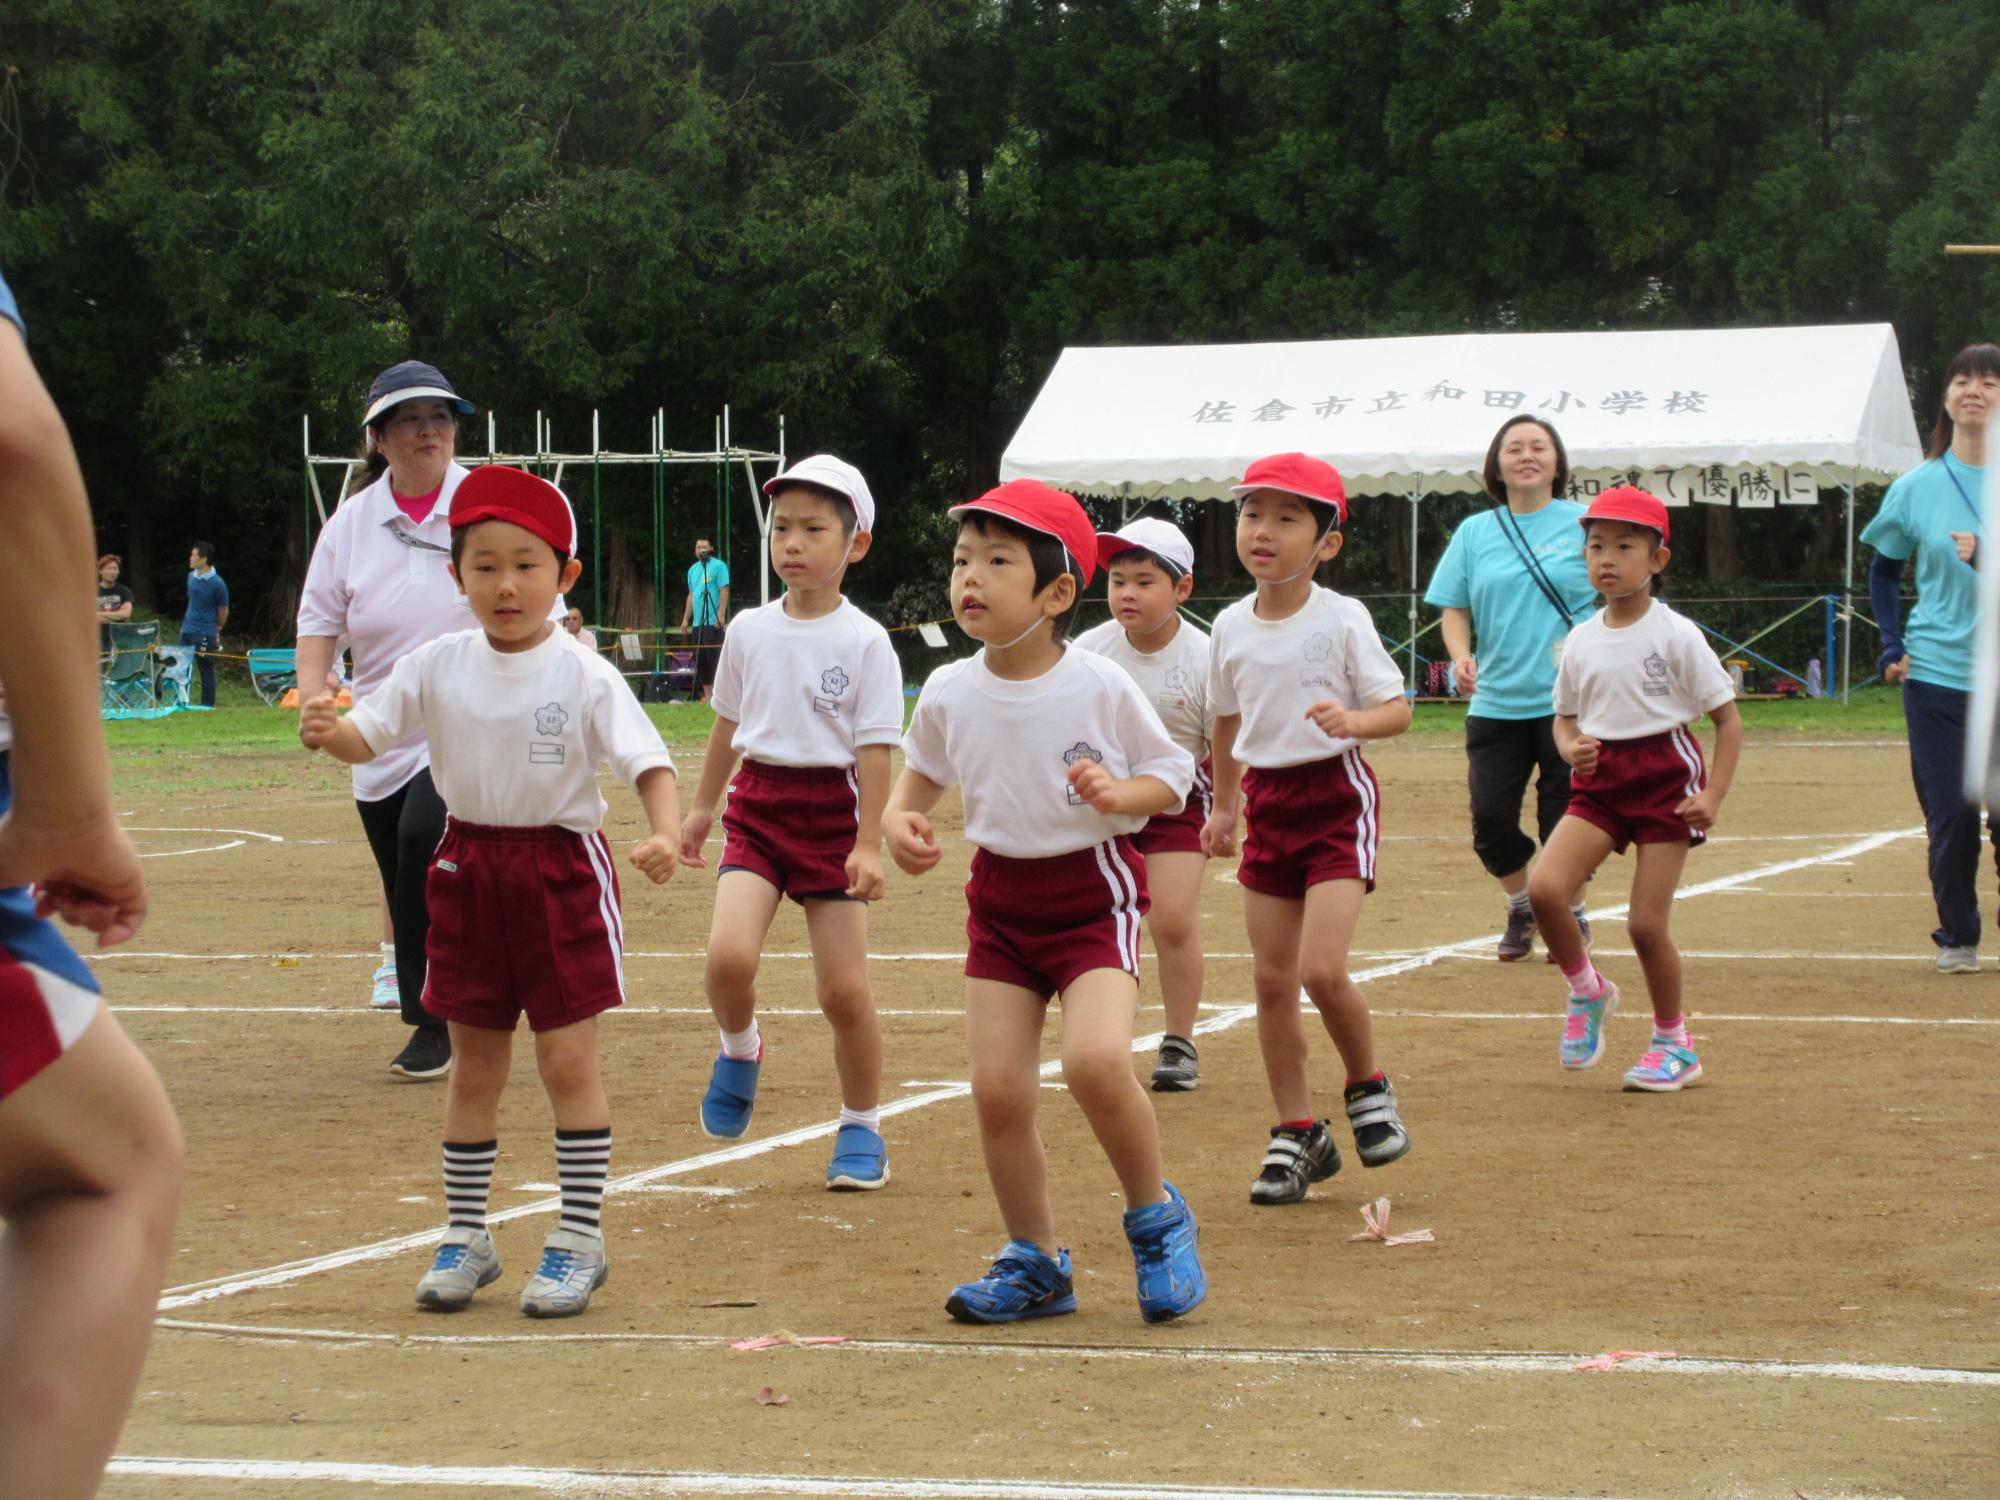 運動場で体育着を着た園児たちが並んで片足を上げている写真